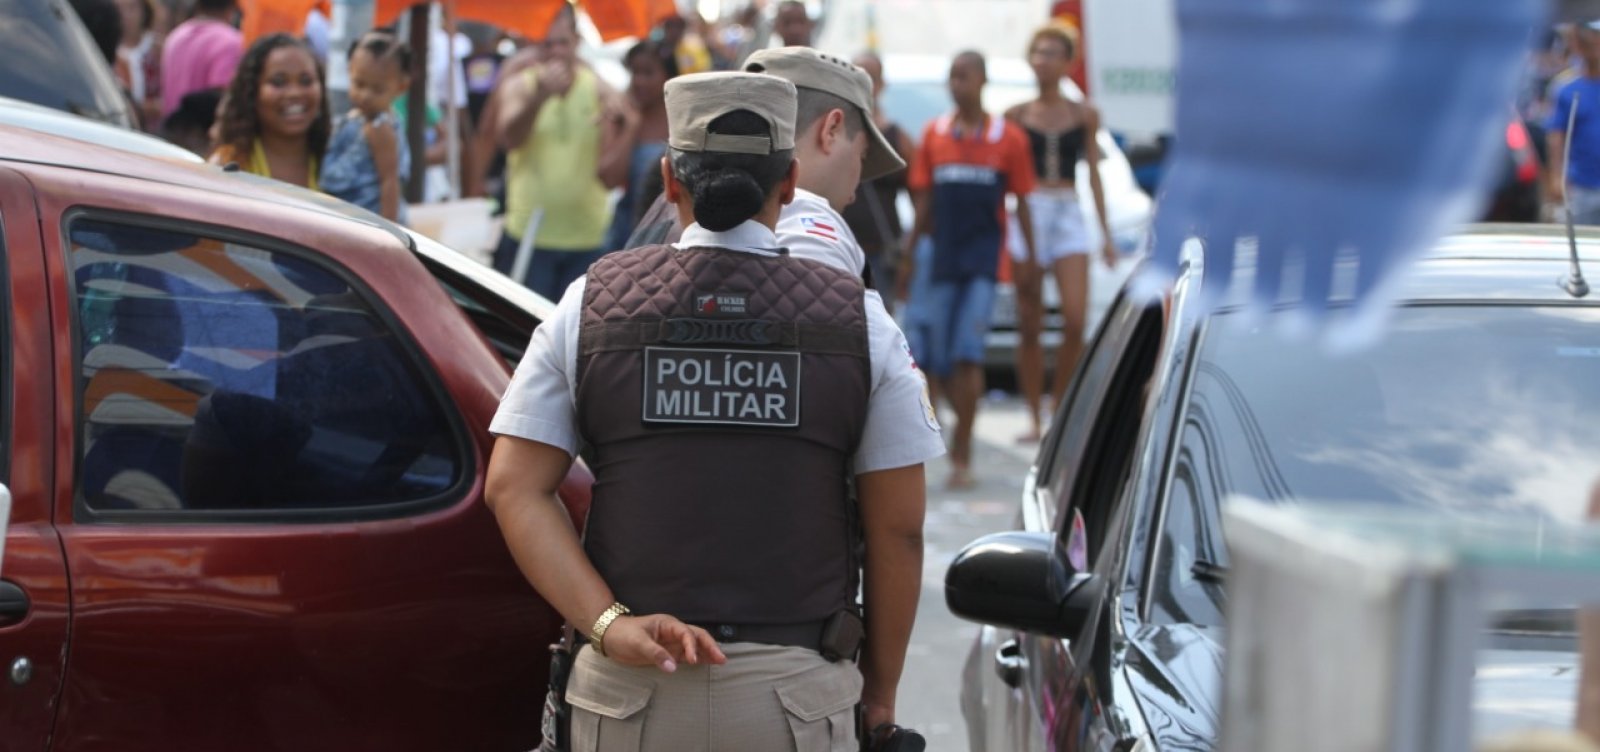 [Candidato a vice-prefeito na cidade de Amélia Rodrigues é preso por tentativa de suborno a PMs]